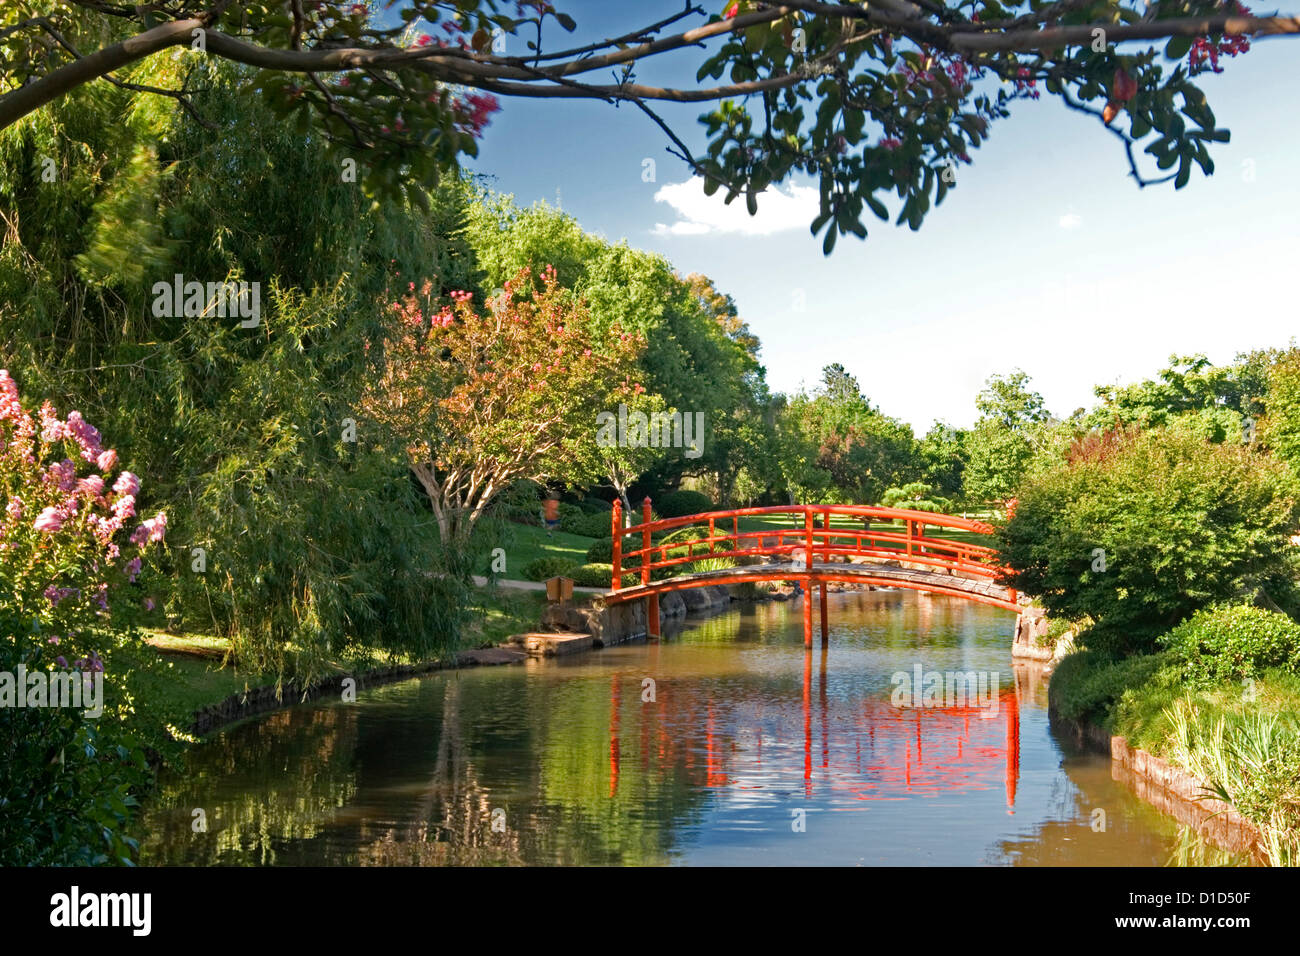 Japanischer Garten mit kunstvoll gewölbte Brücke spiegelt sich im blauen Wasser des Streams / Teich unter dekorativen Bäumen und Sträuchern Stockfoto